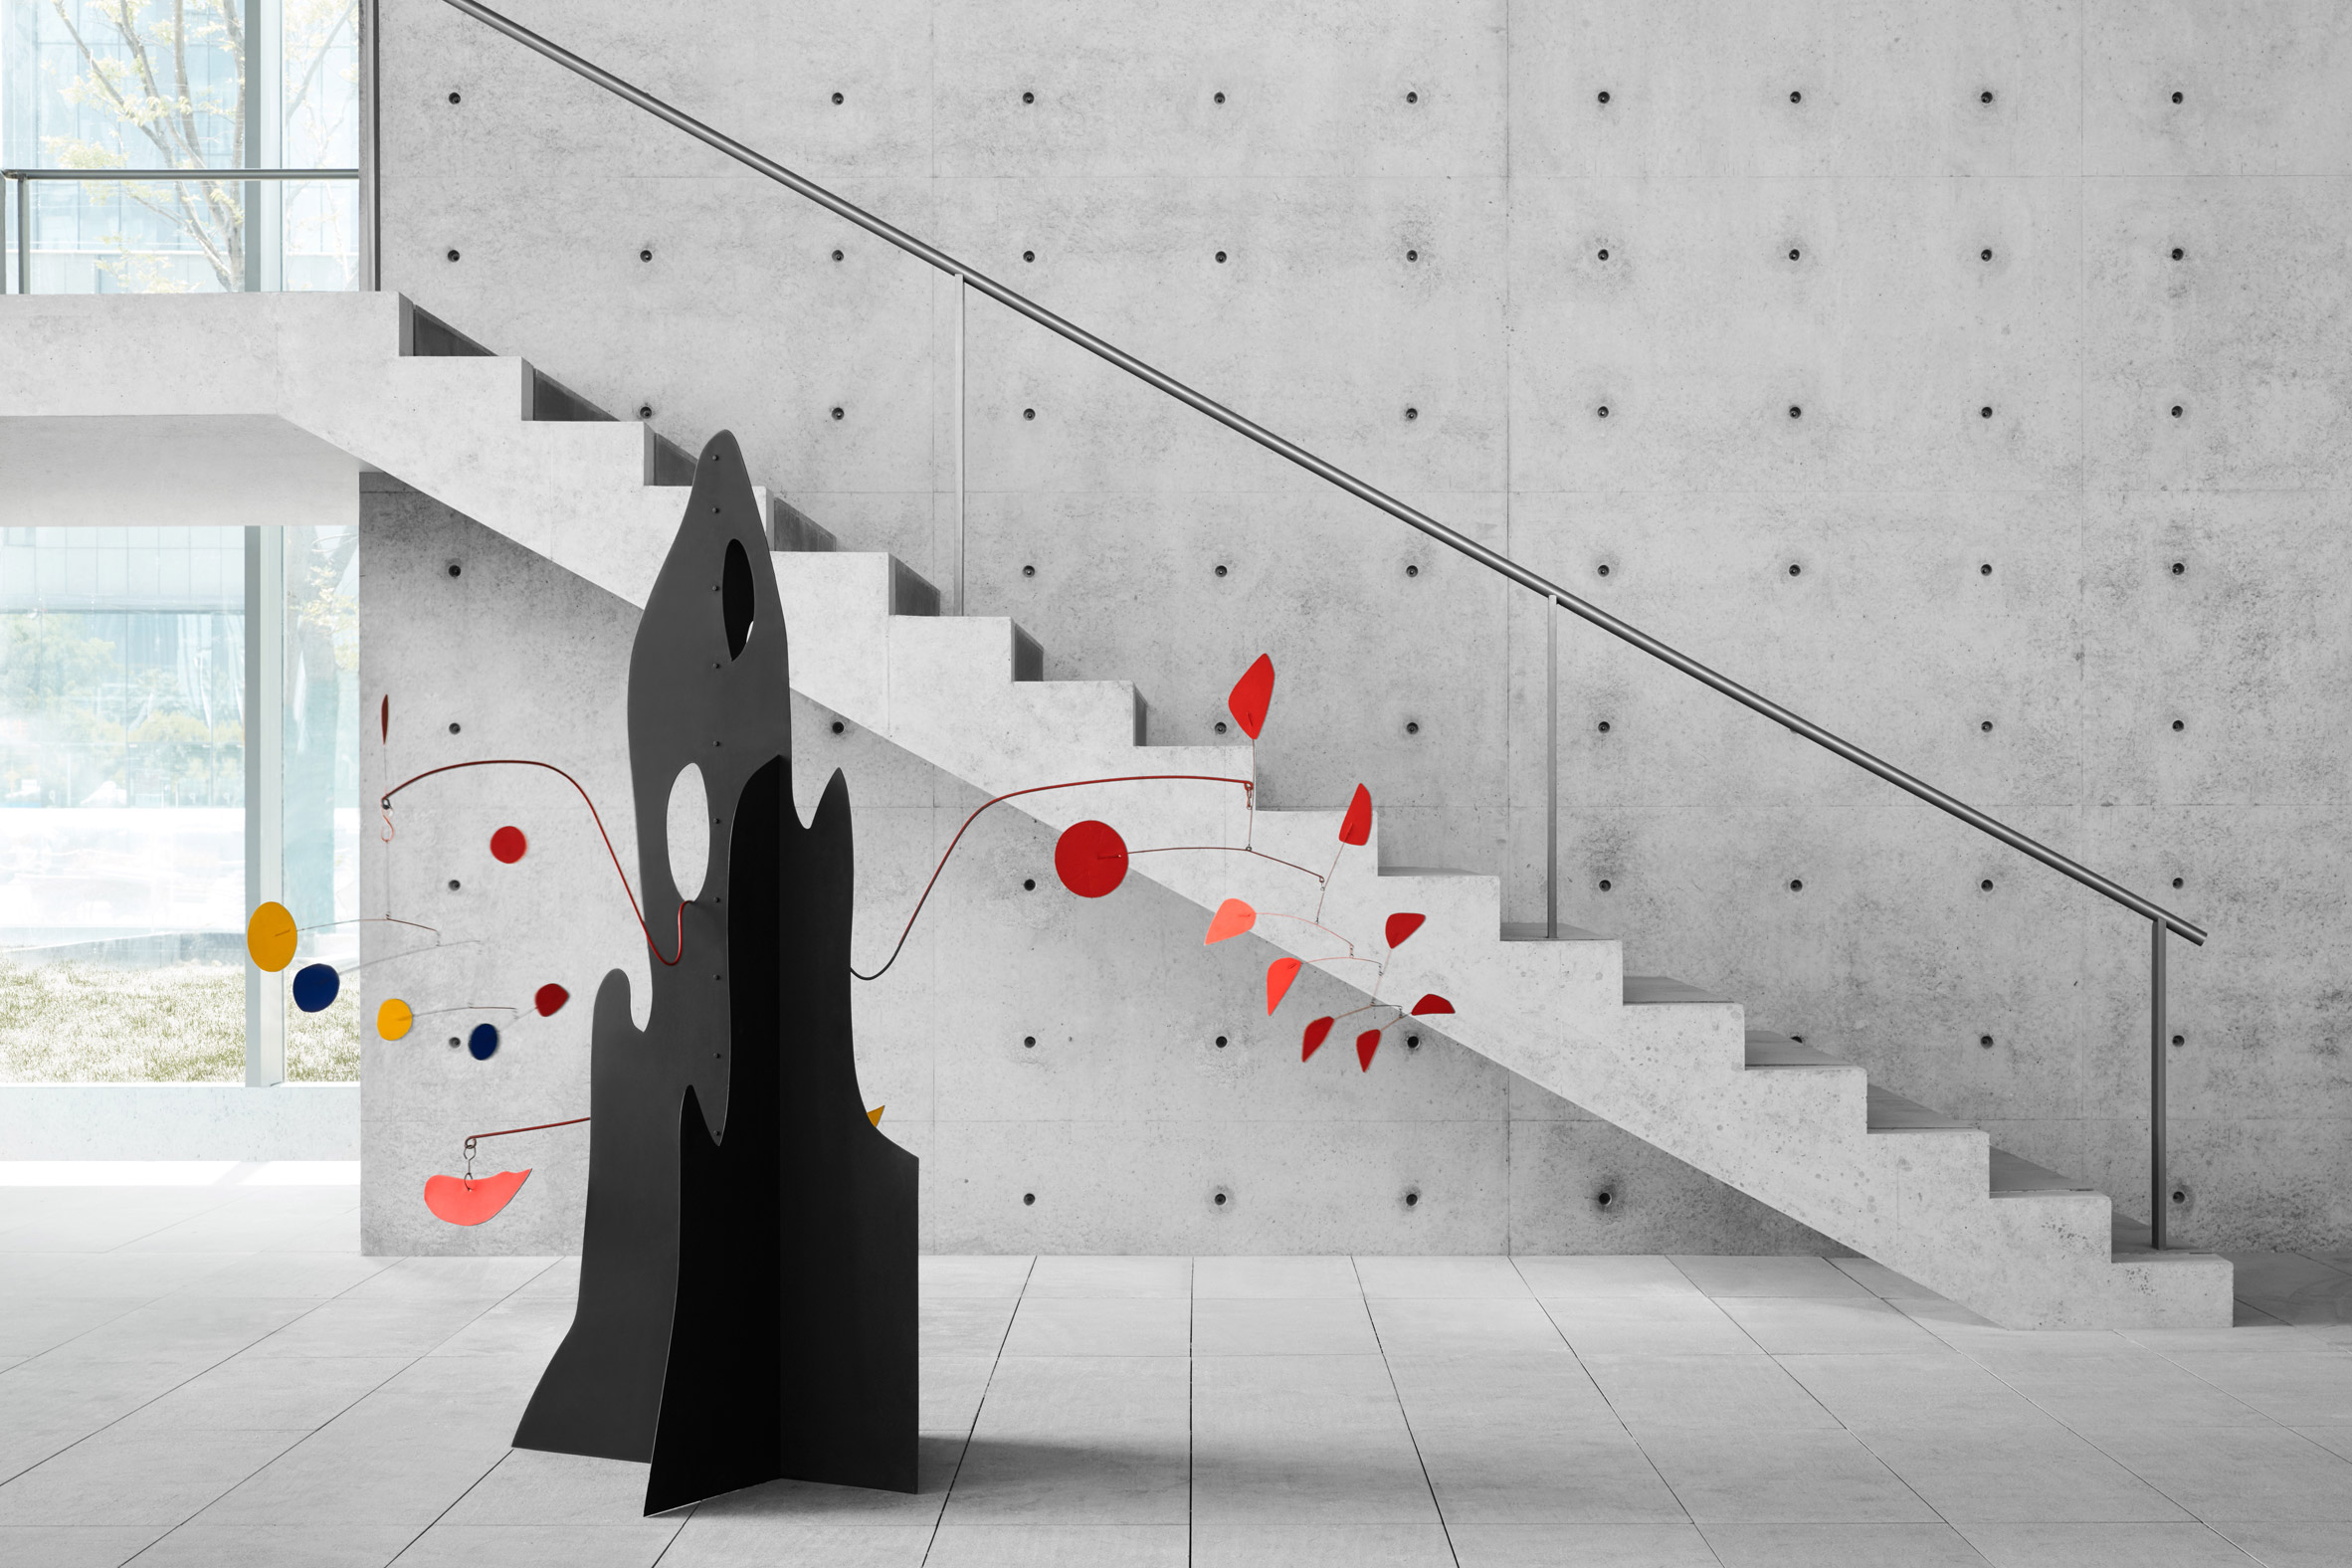 Concrete gallery inside He Art Museum by Tadao Ando